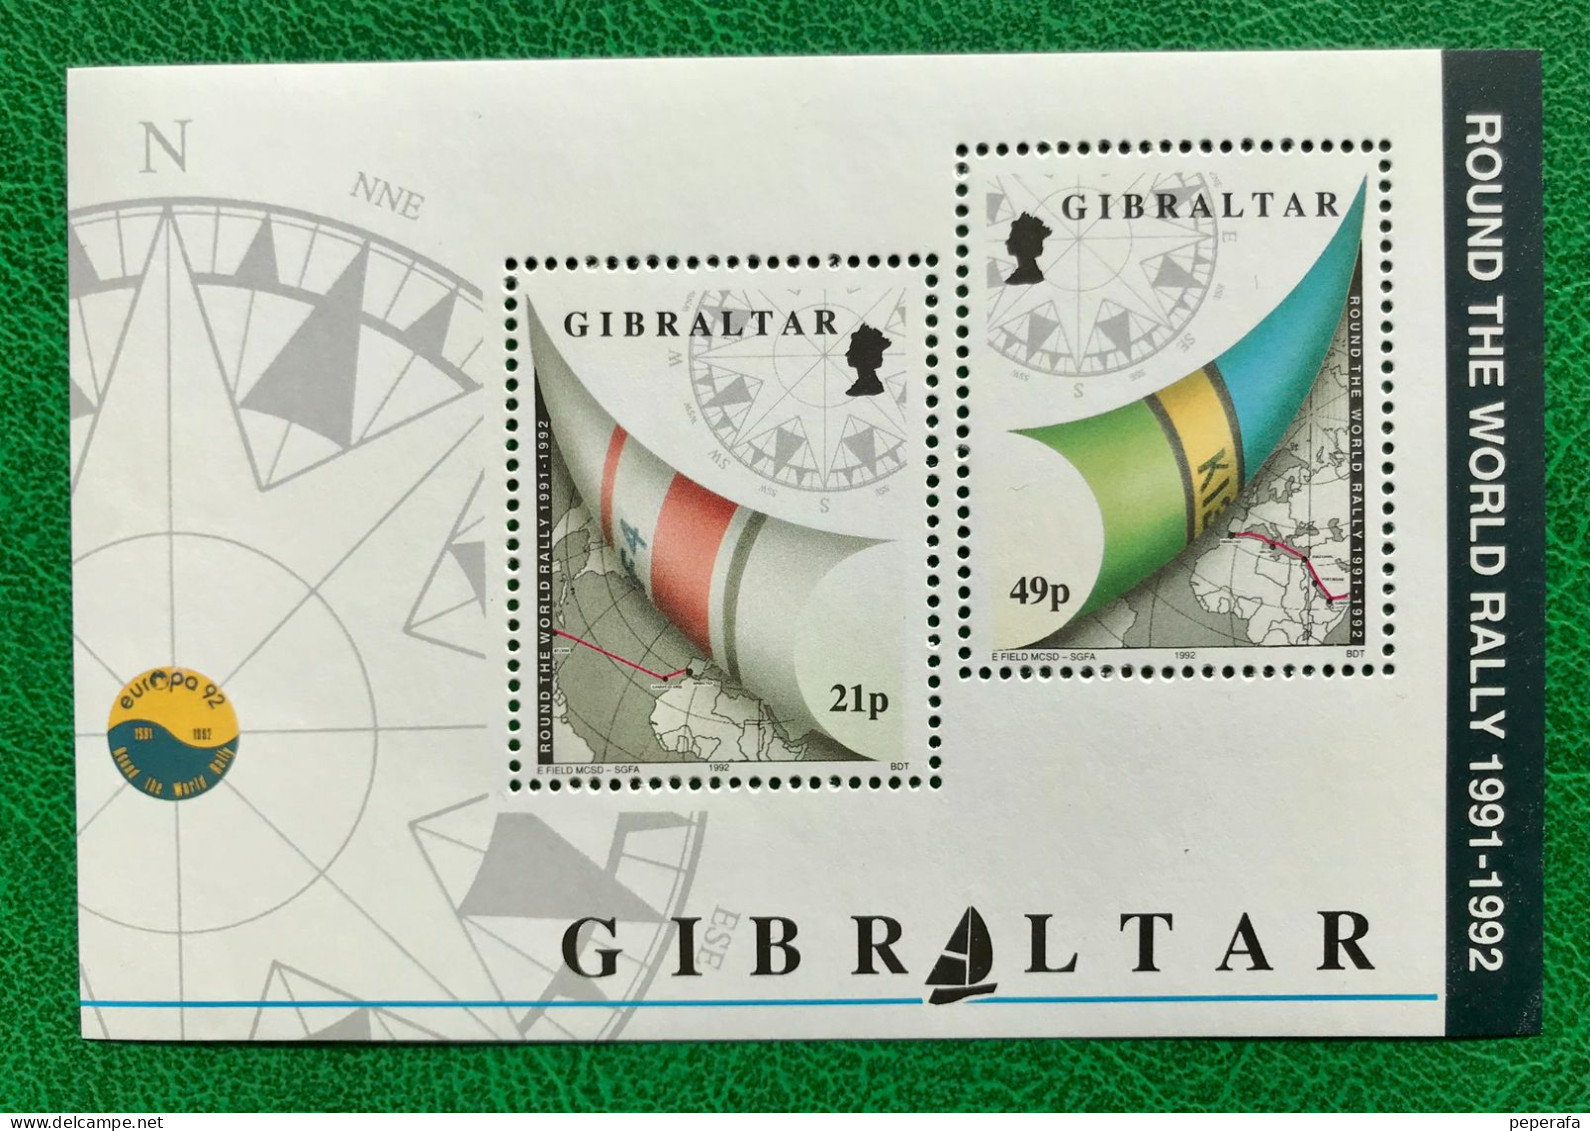 GIBRALTAR, ROUND THE WORLD RALLY 1991 - 1992, **MNH - Gibraltar